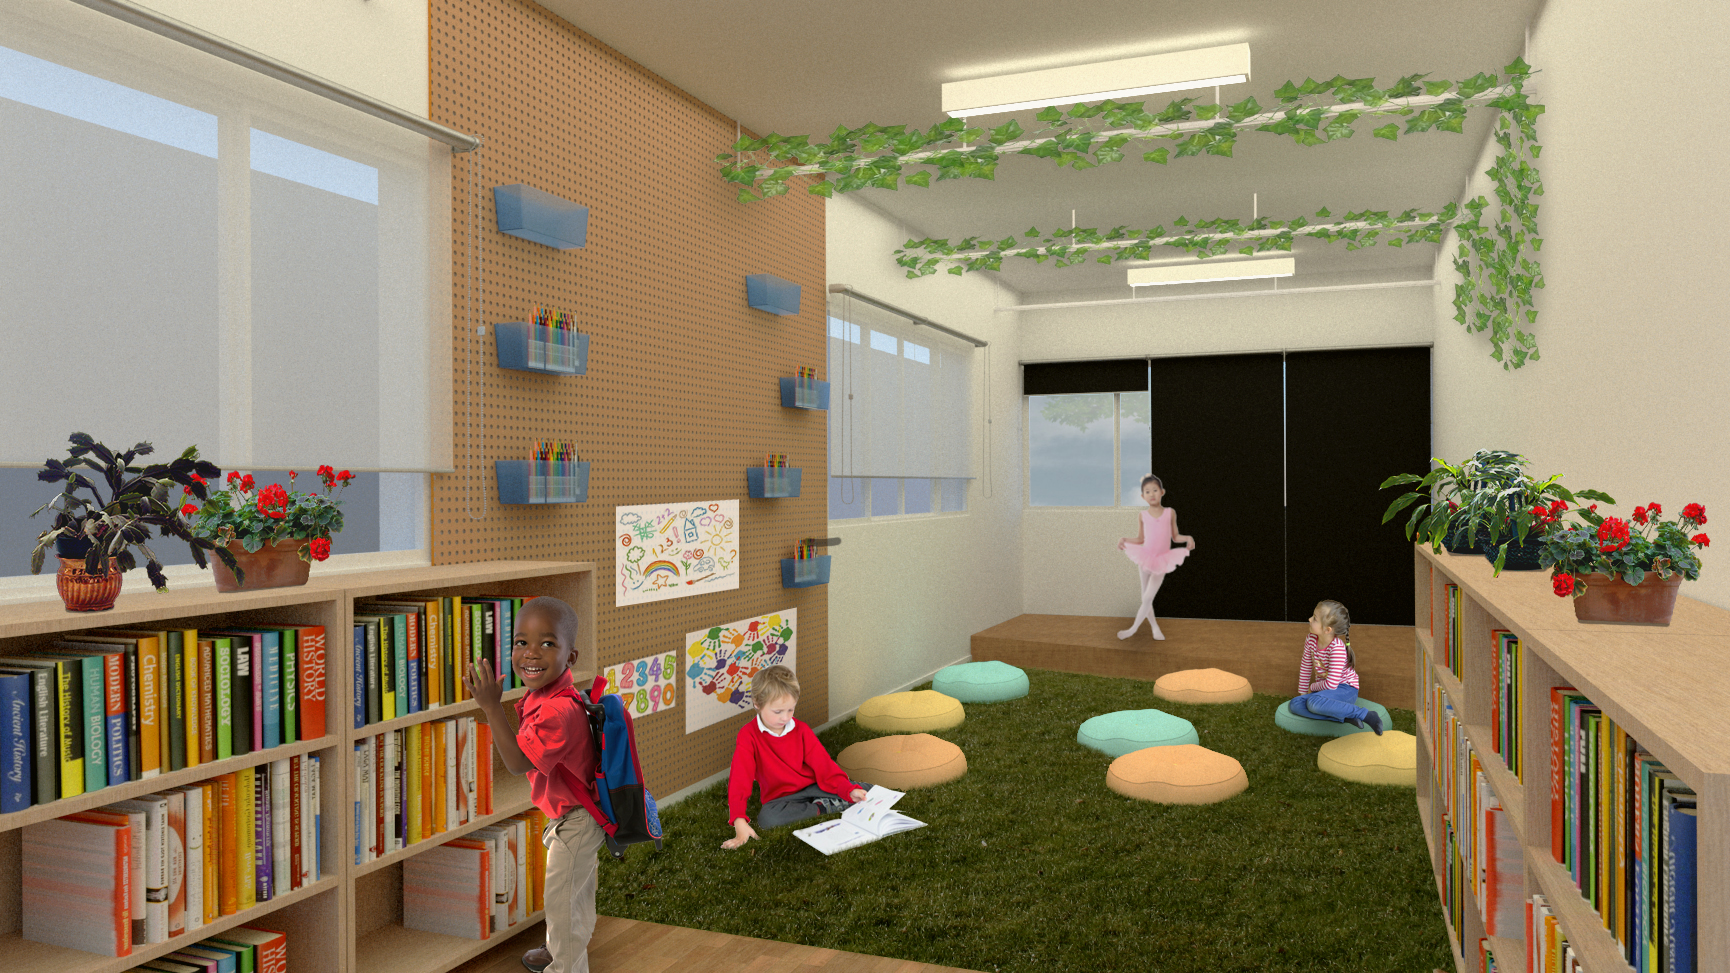 Projeto Minha Sala + Bonita transforma escola em espaço de arte